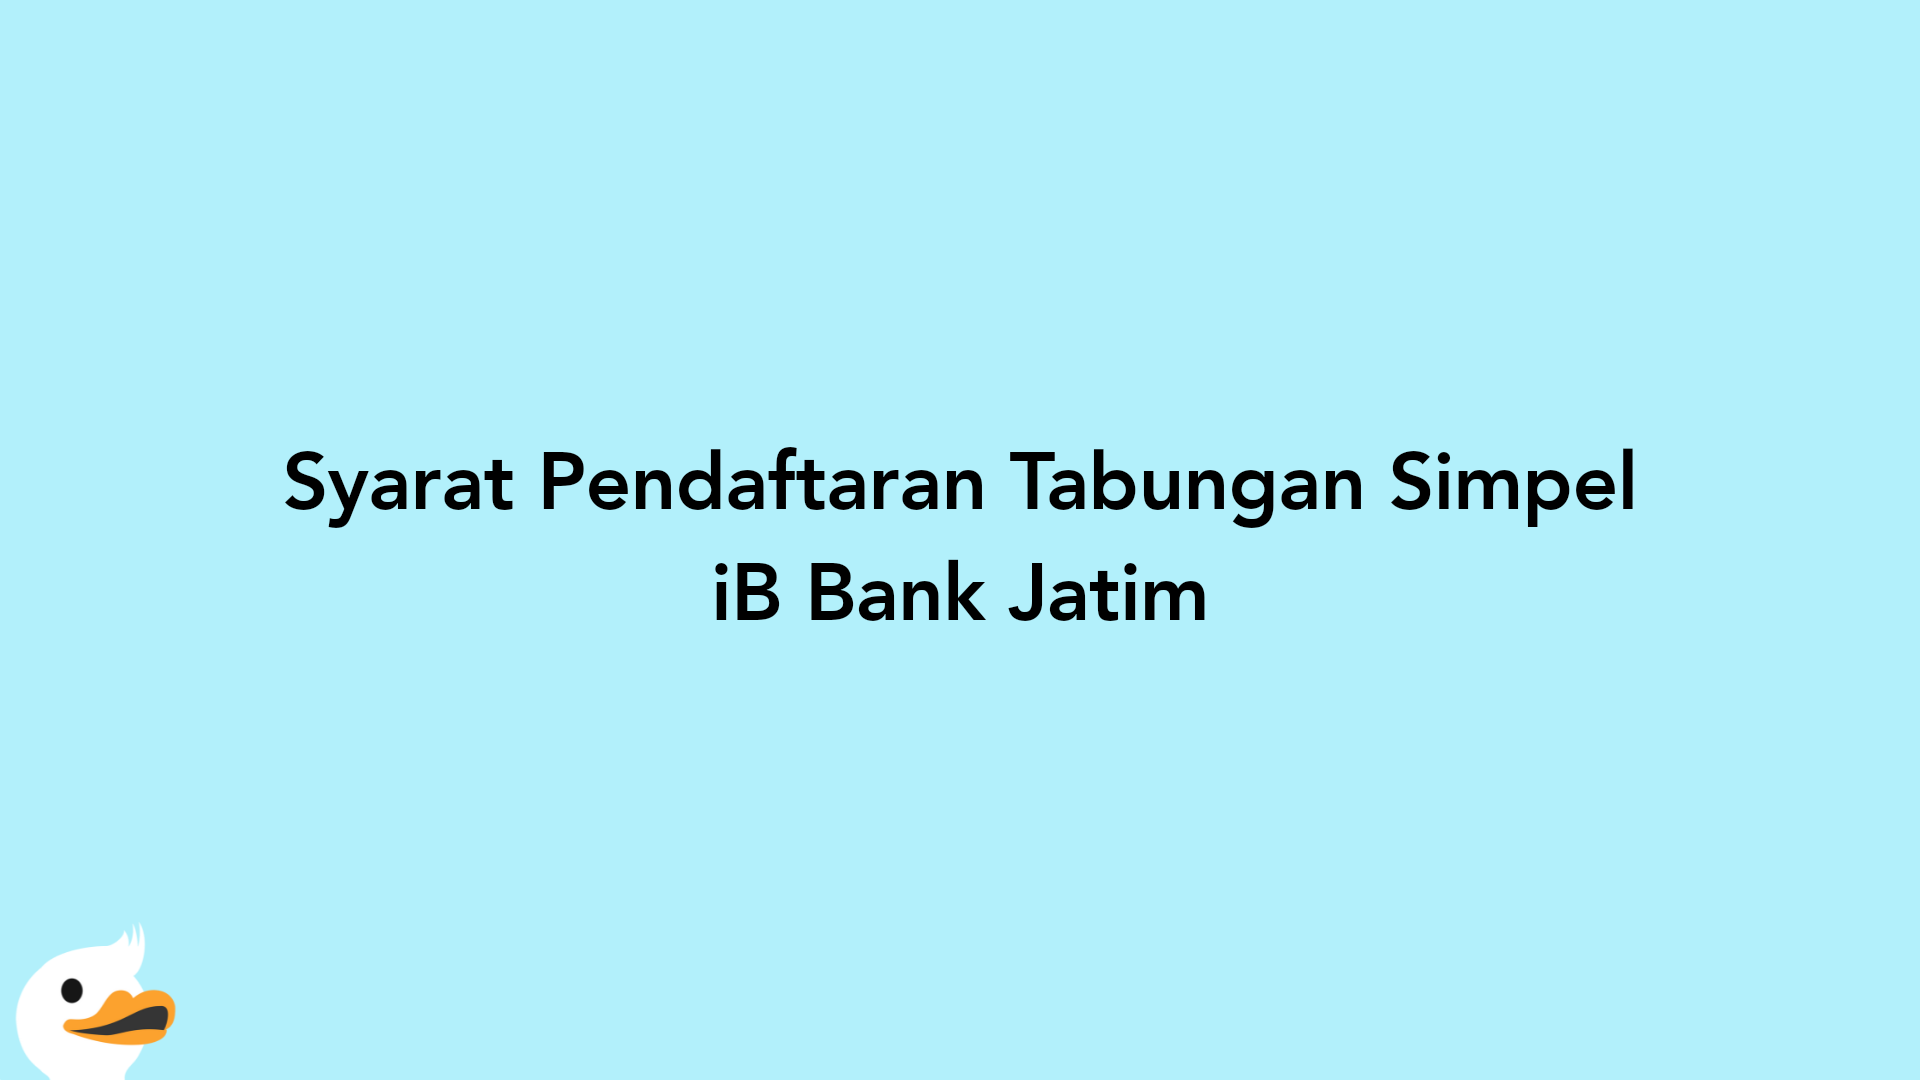 Syarat Pendaftaran Tabungan Simpel iB Bank Jatim